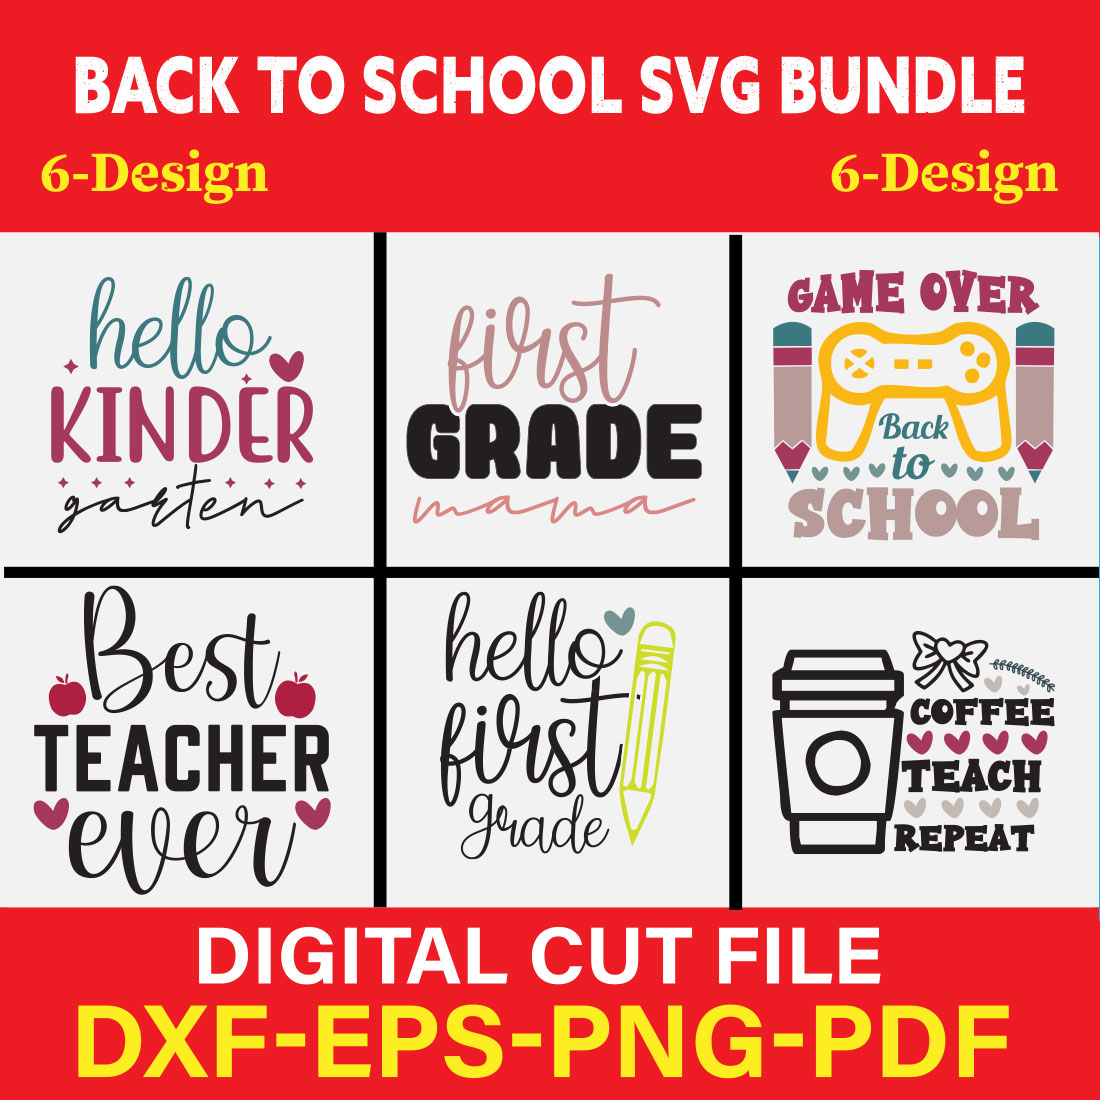 Back to School Svg Bundle SVG Bundle Vol-02 cover image.